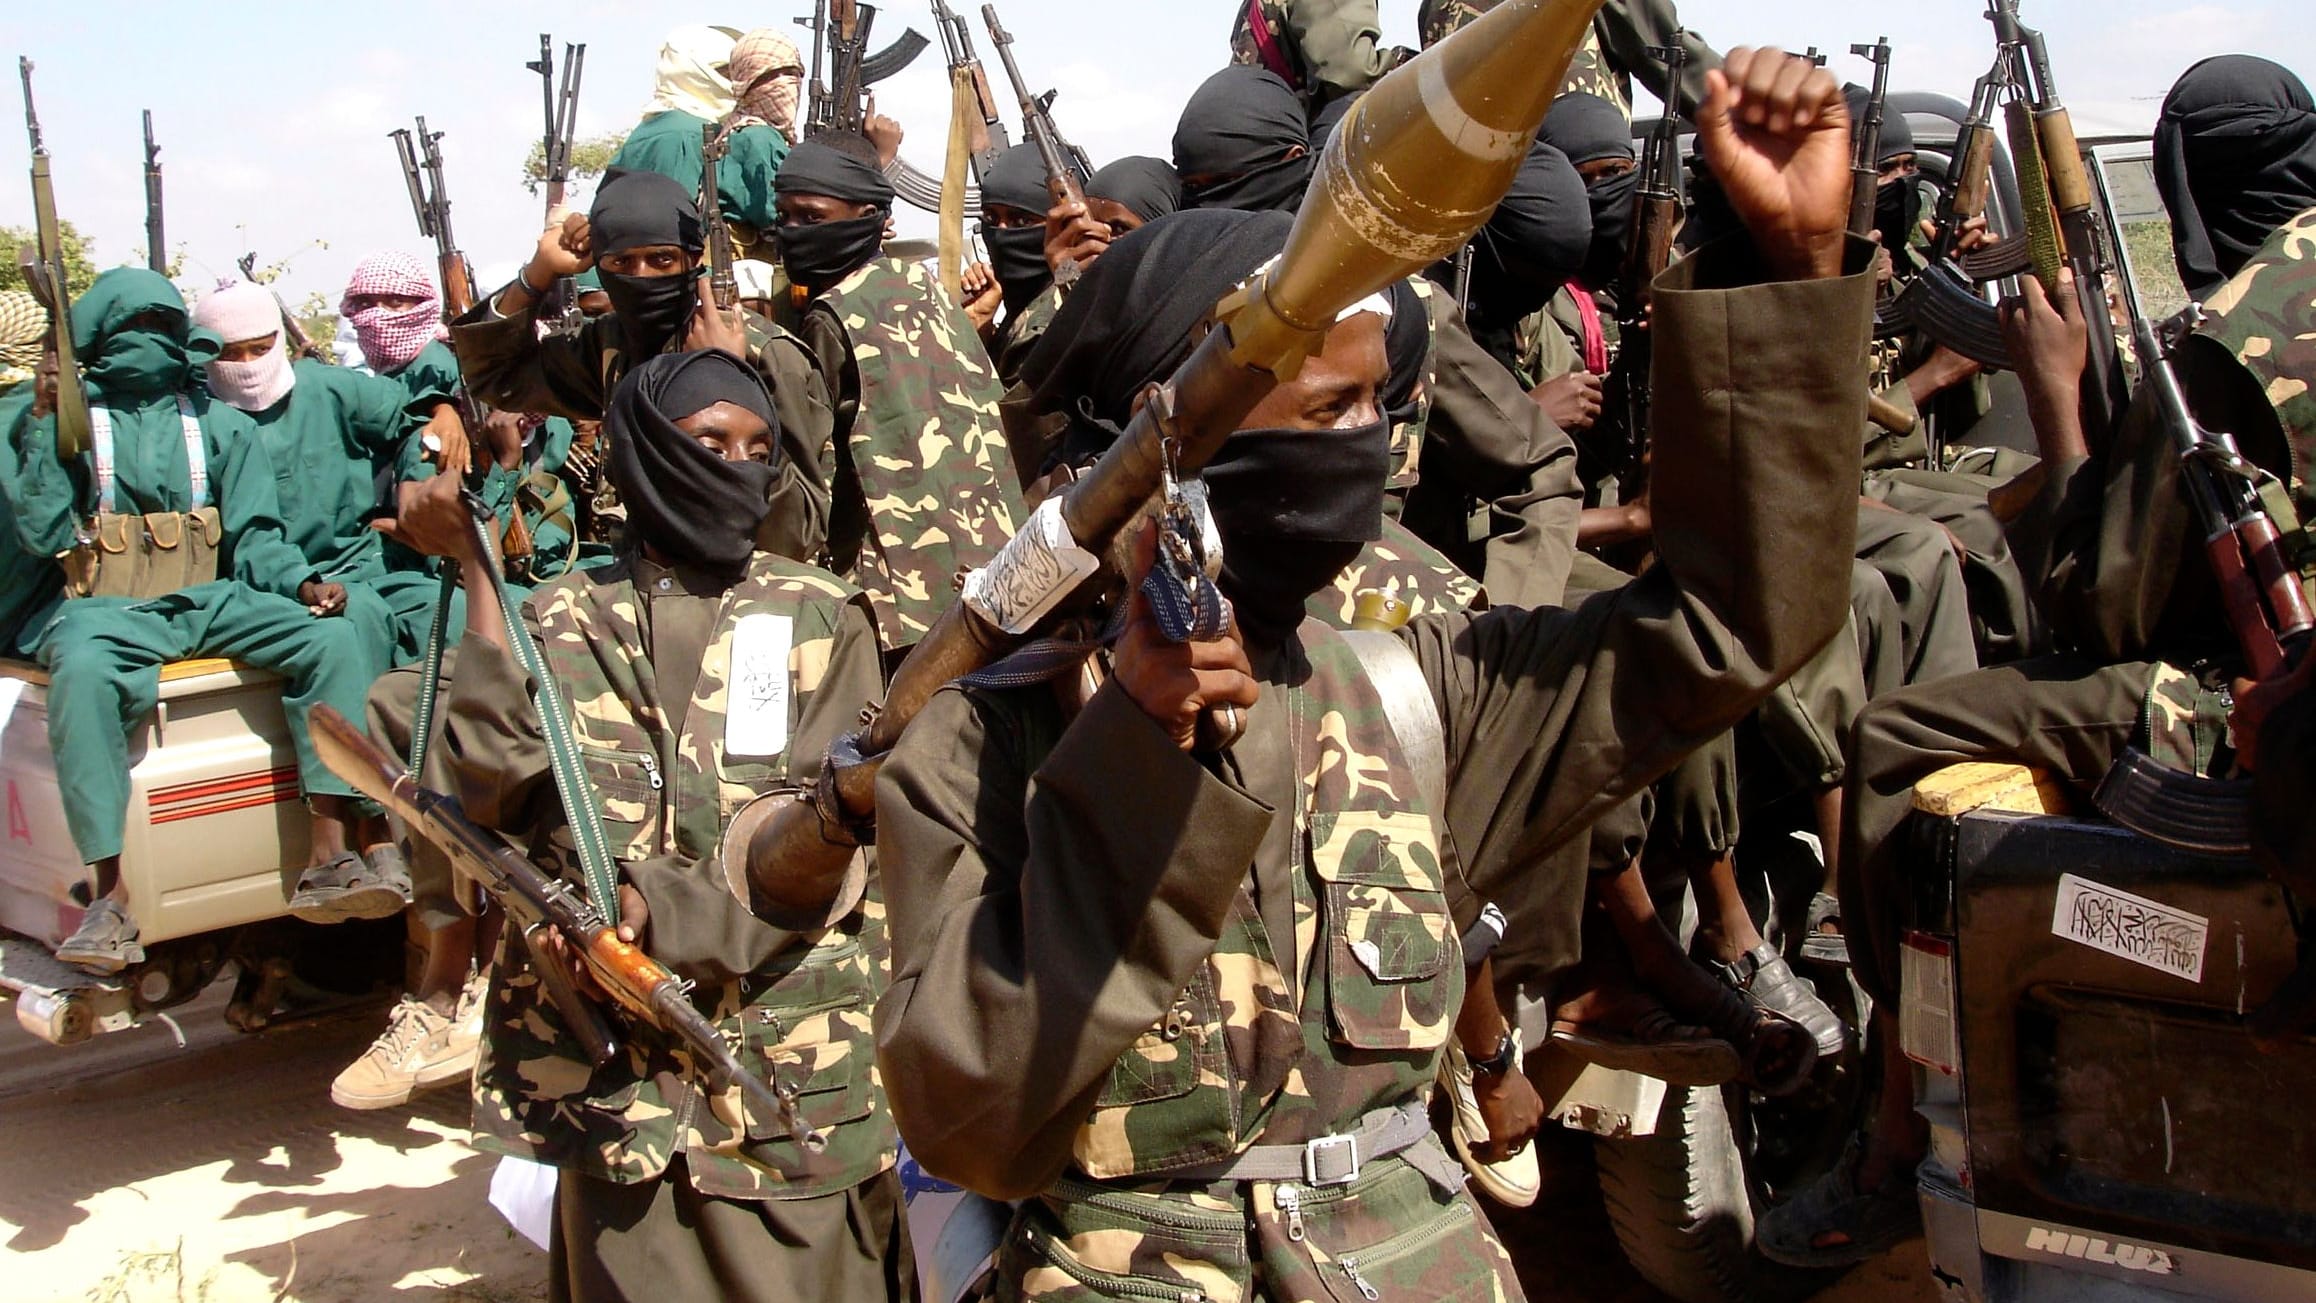 Somalia: UN-Hubschrauber offenbar von Islamisten gekapert – Geiselnahme 